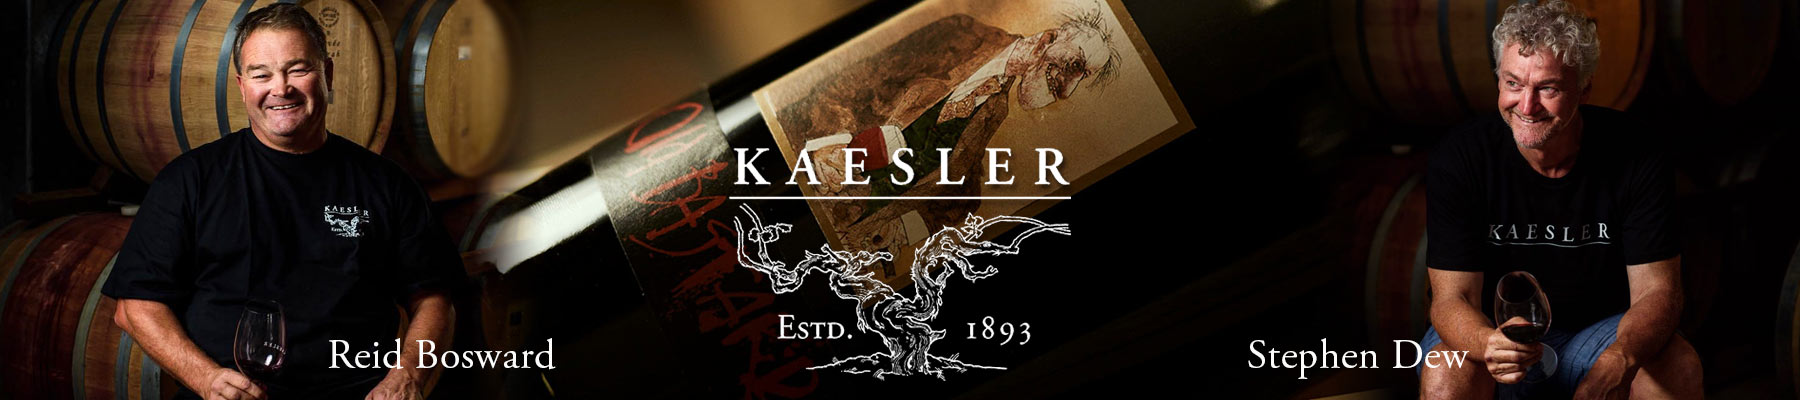 Kaesler-130-Anniversary-Bottom-Banner-01